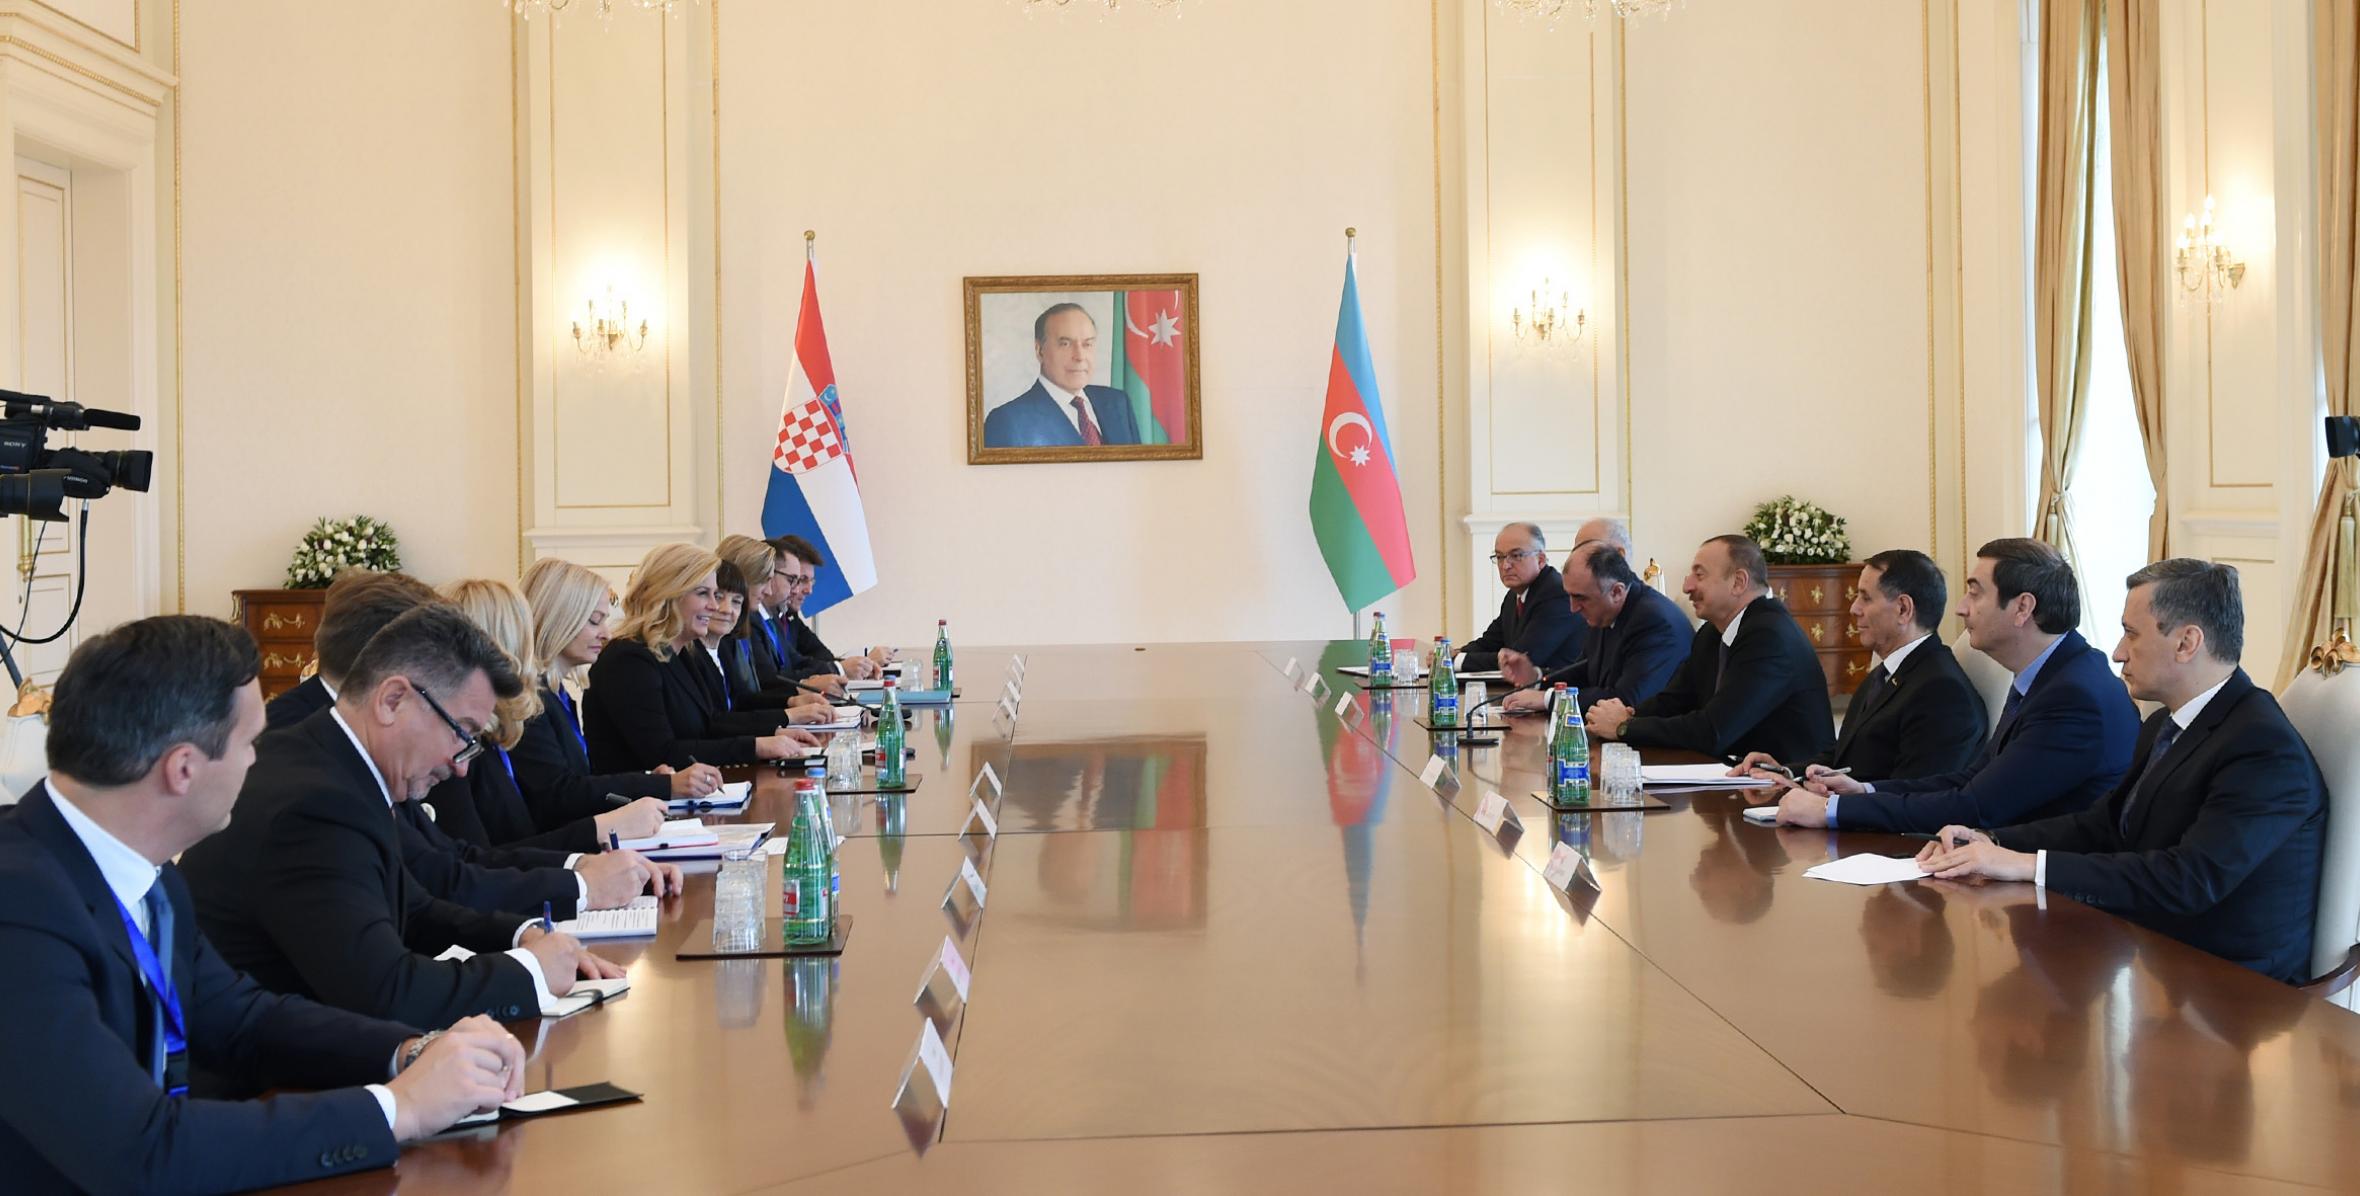 Состоялась встреча Ильхама Алиева с Президентом Хорватии Колиндой Грабар-Китарович в расширенном составе